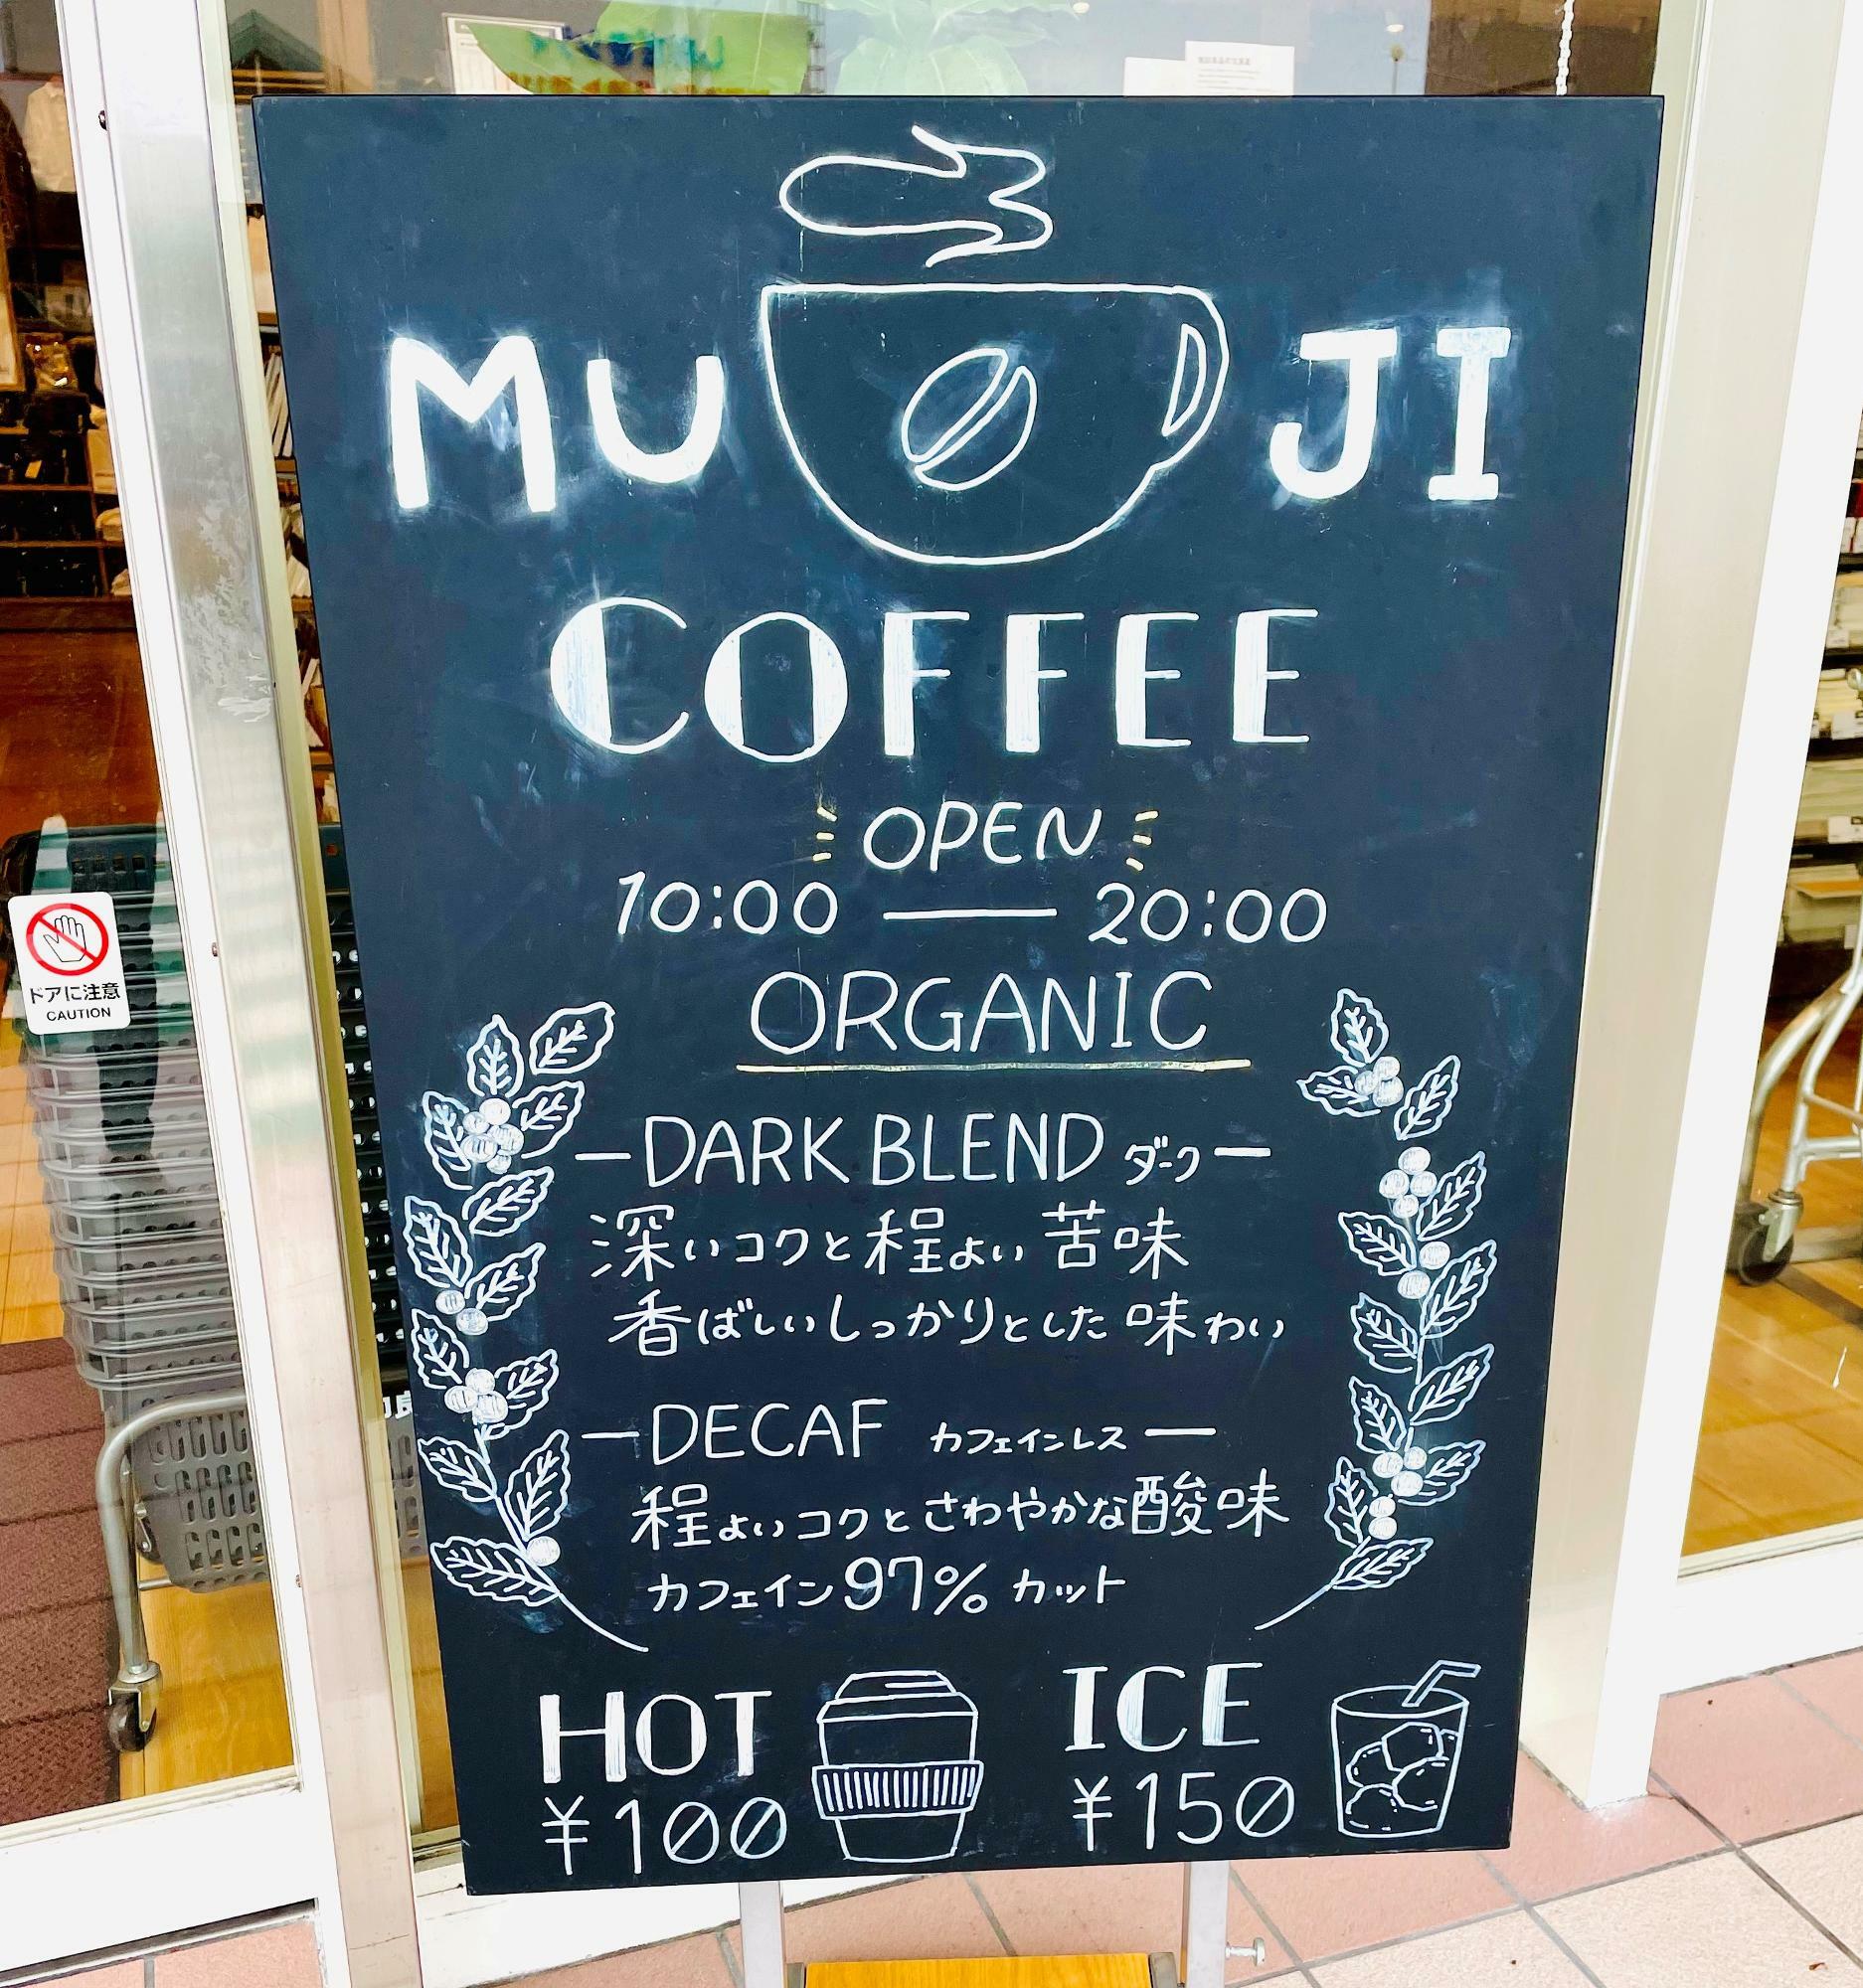 MUJI COFFEE